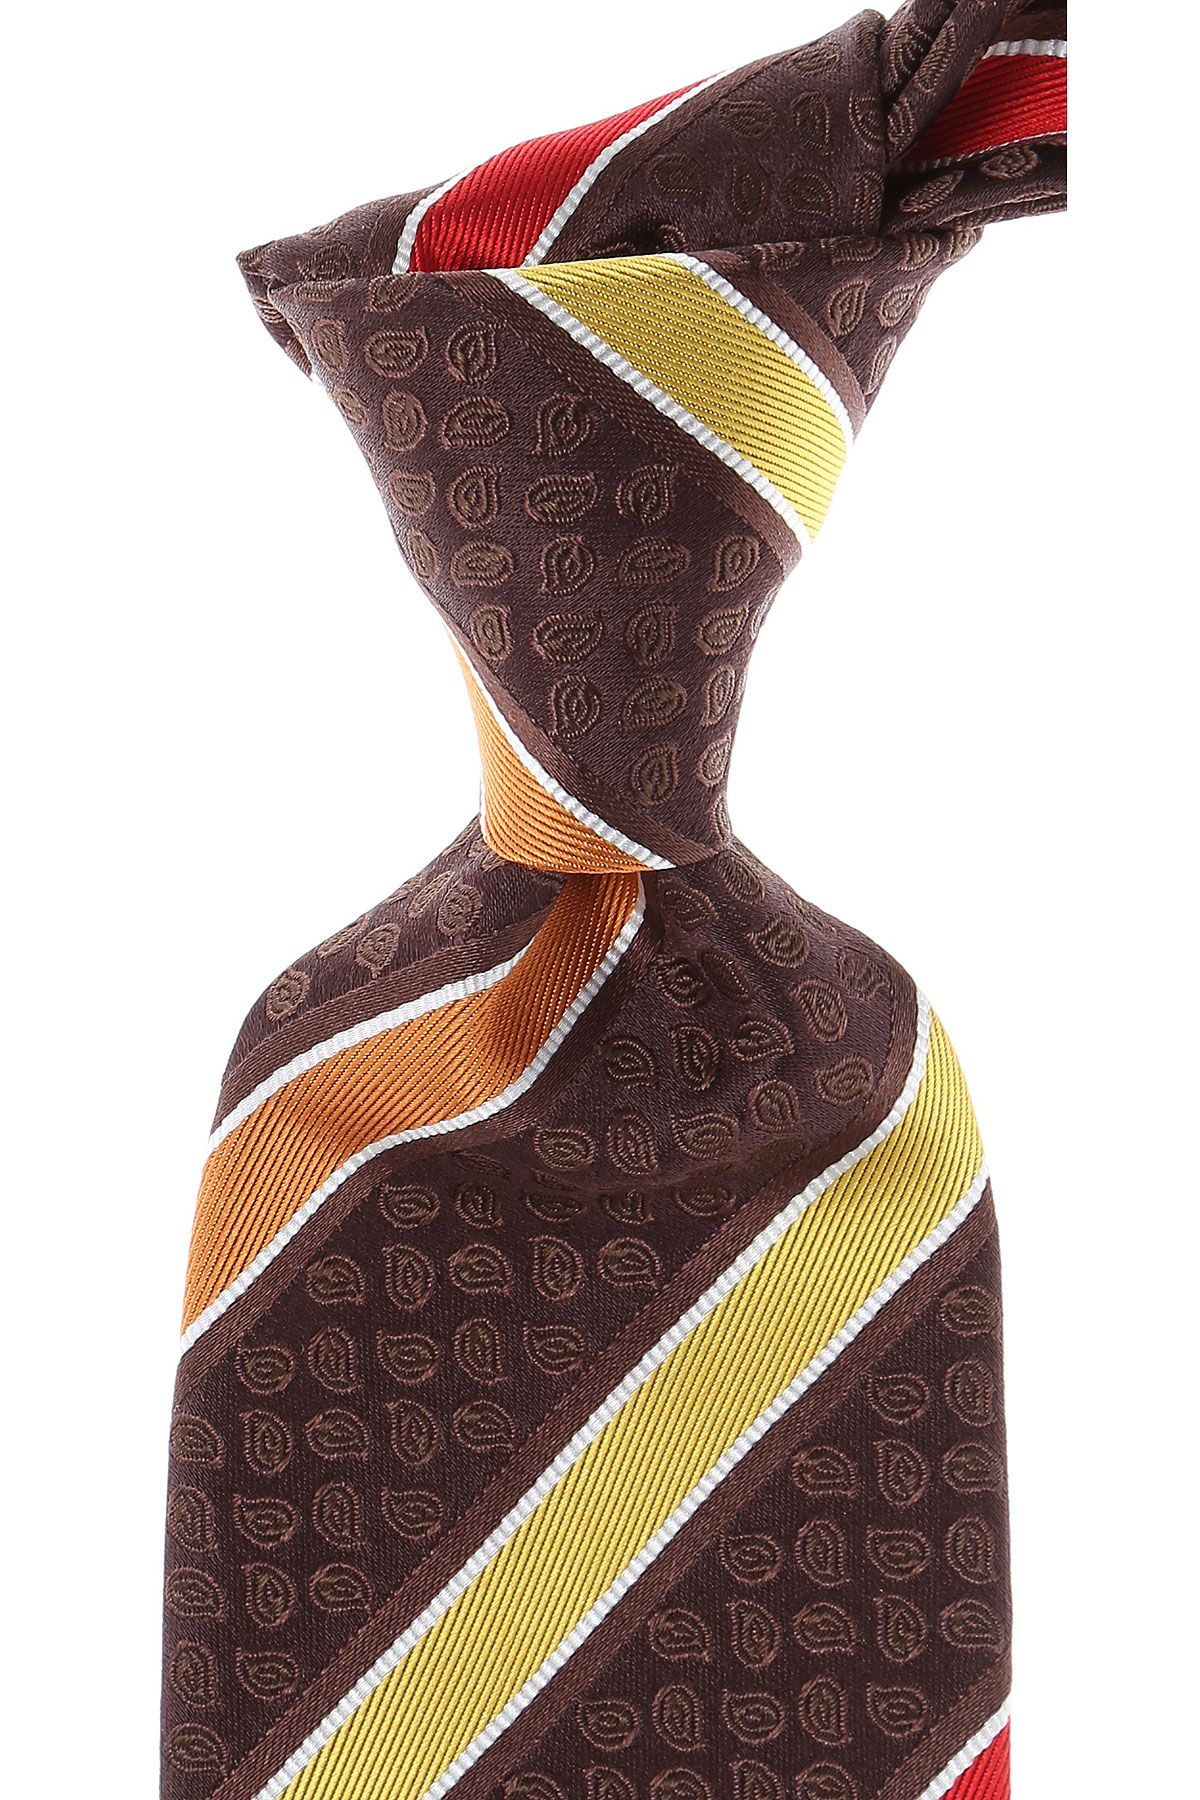 Cravates Etro , Marron Chocolat, Soie, 2017